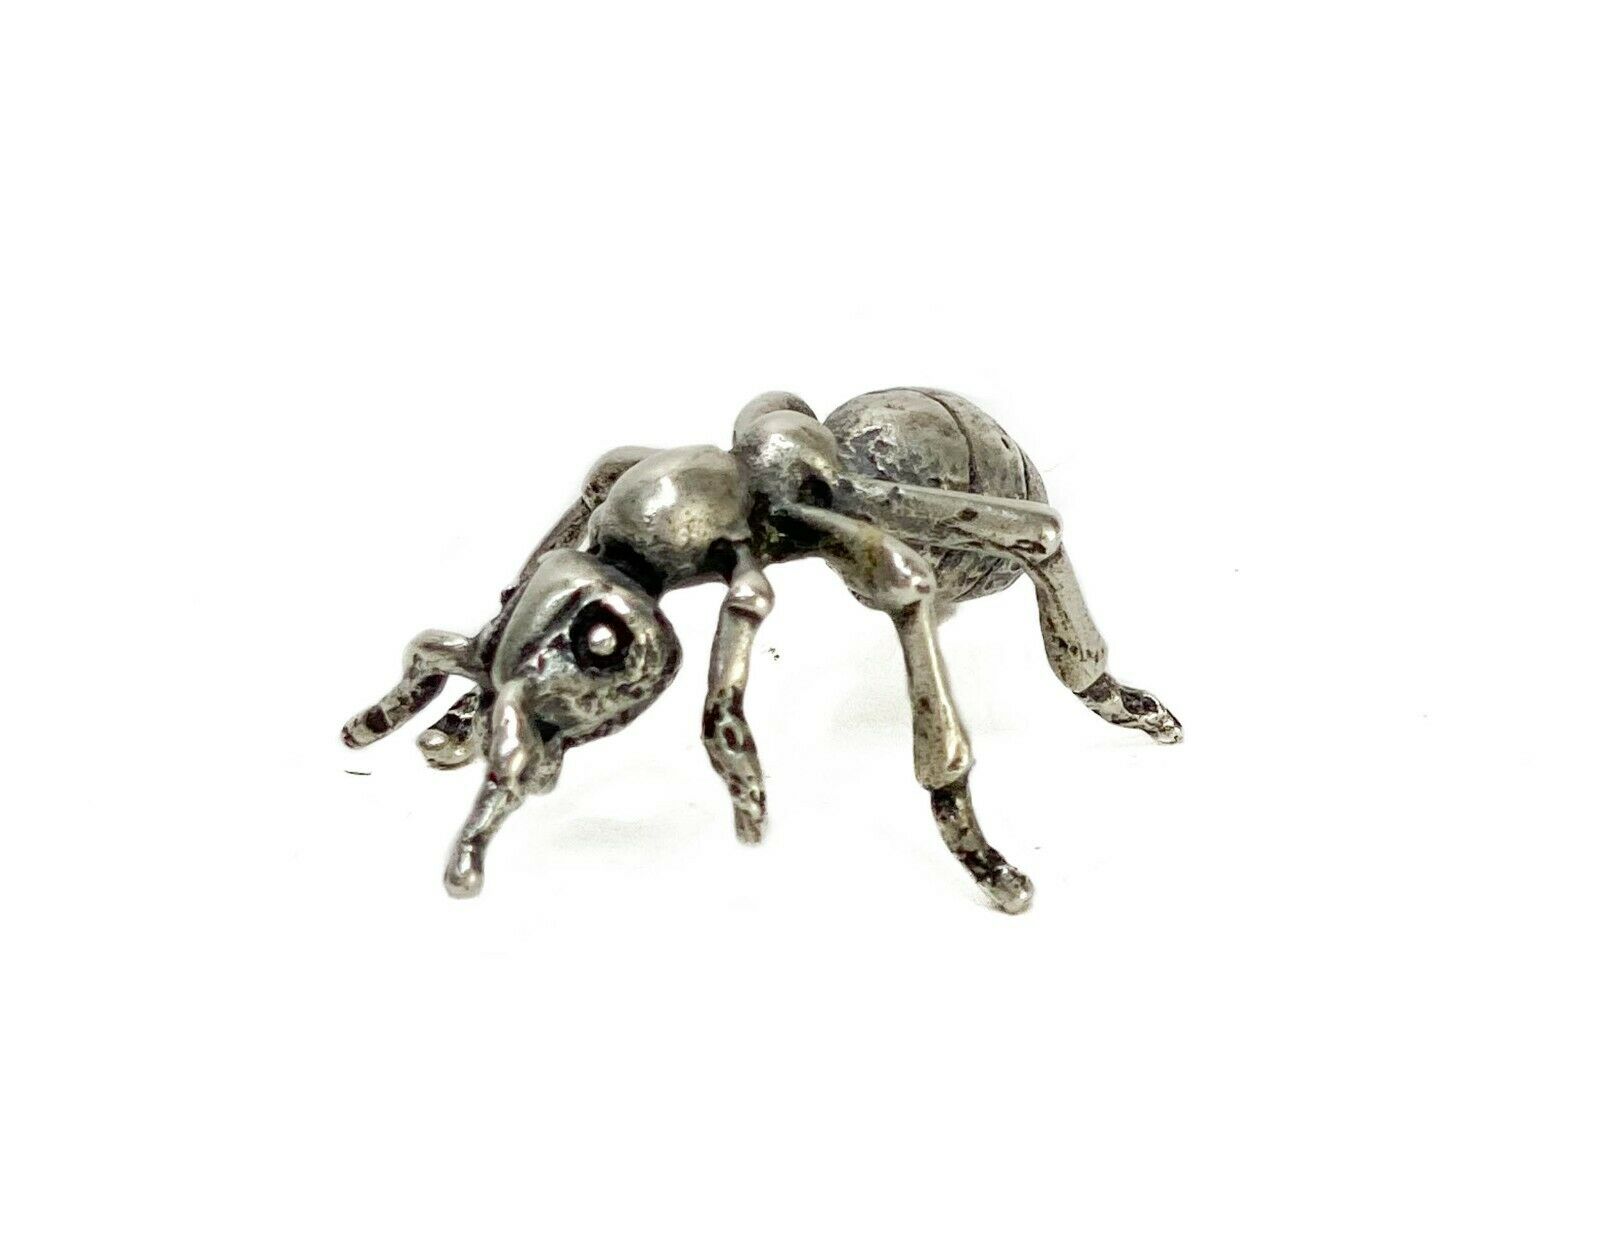 Santini Donato Italian 800 Solid Silver Miniature Ant Figurine C. 1970